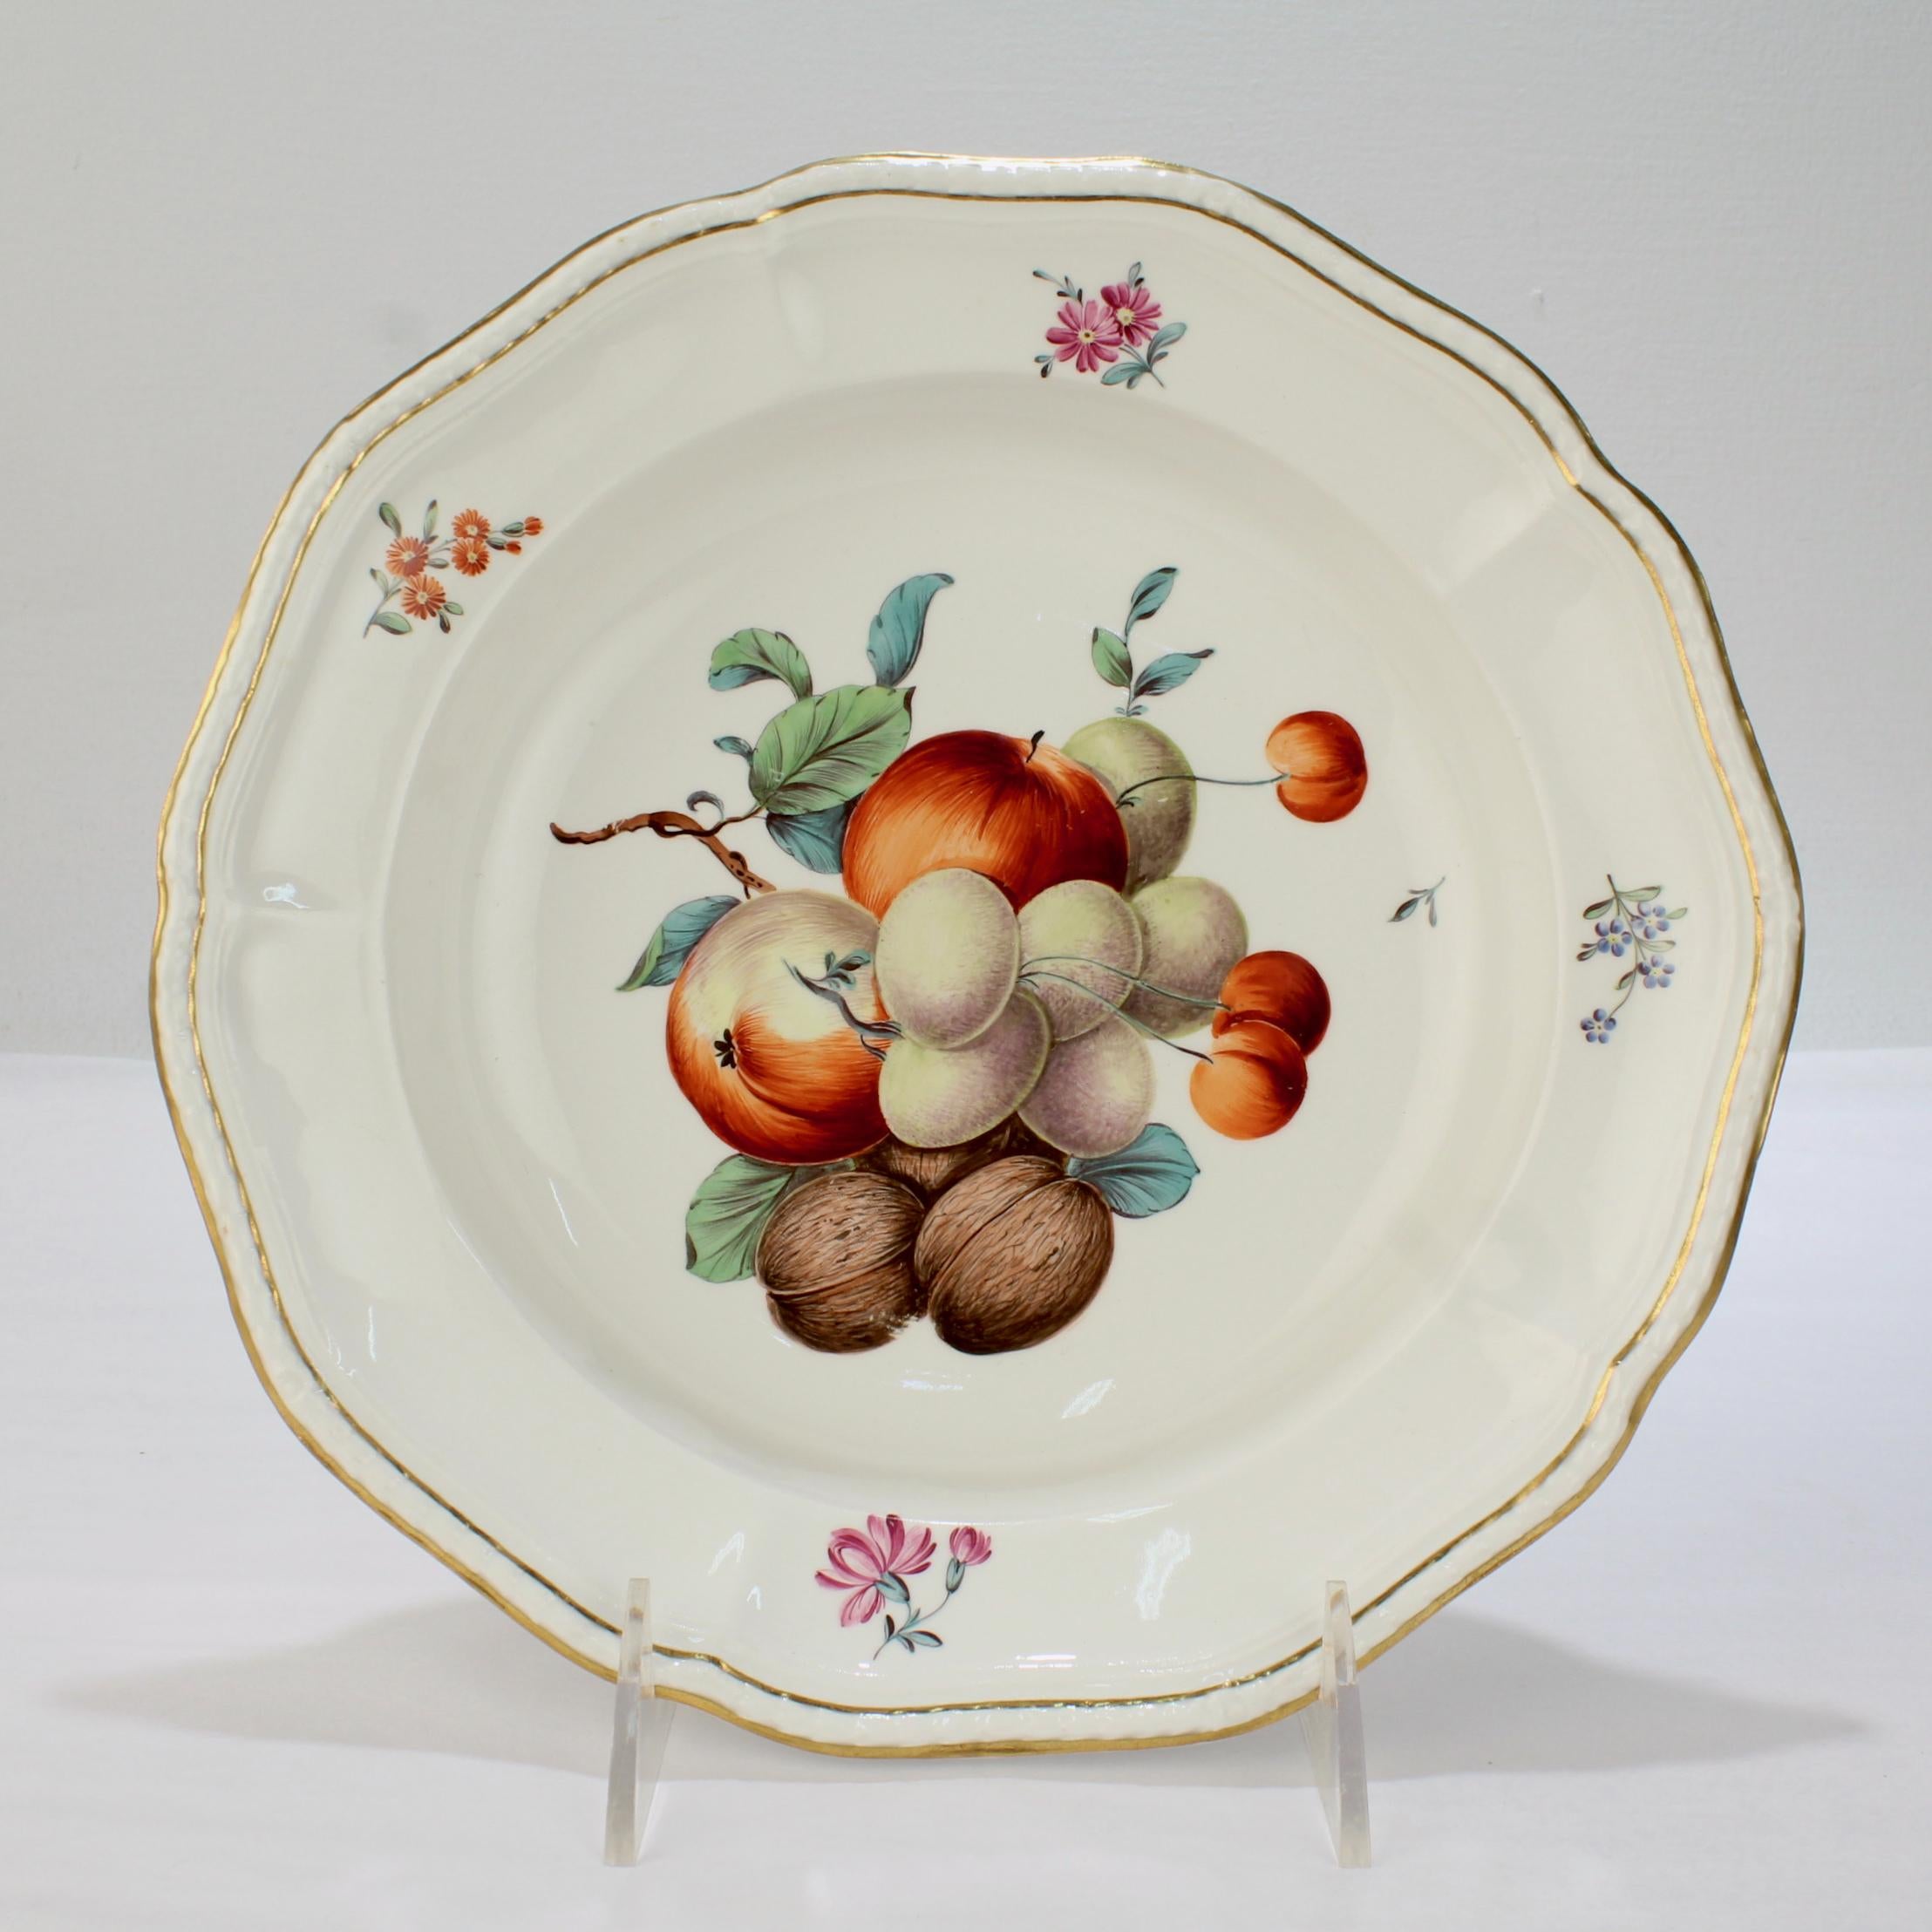 Eine sehr schöne antike Porzellanschale aus dem 18. Jahrhundert.

Von Frankenthal zur Zeit Carl Theodors.

Die Schale ist mit einer Gruppe von Früchten und Nüssen aus polychromem Email verziert, der Rand ist mit Blumenranken verziert und der